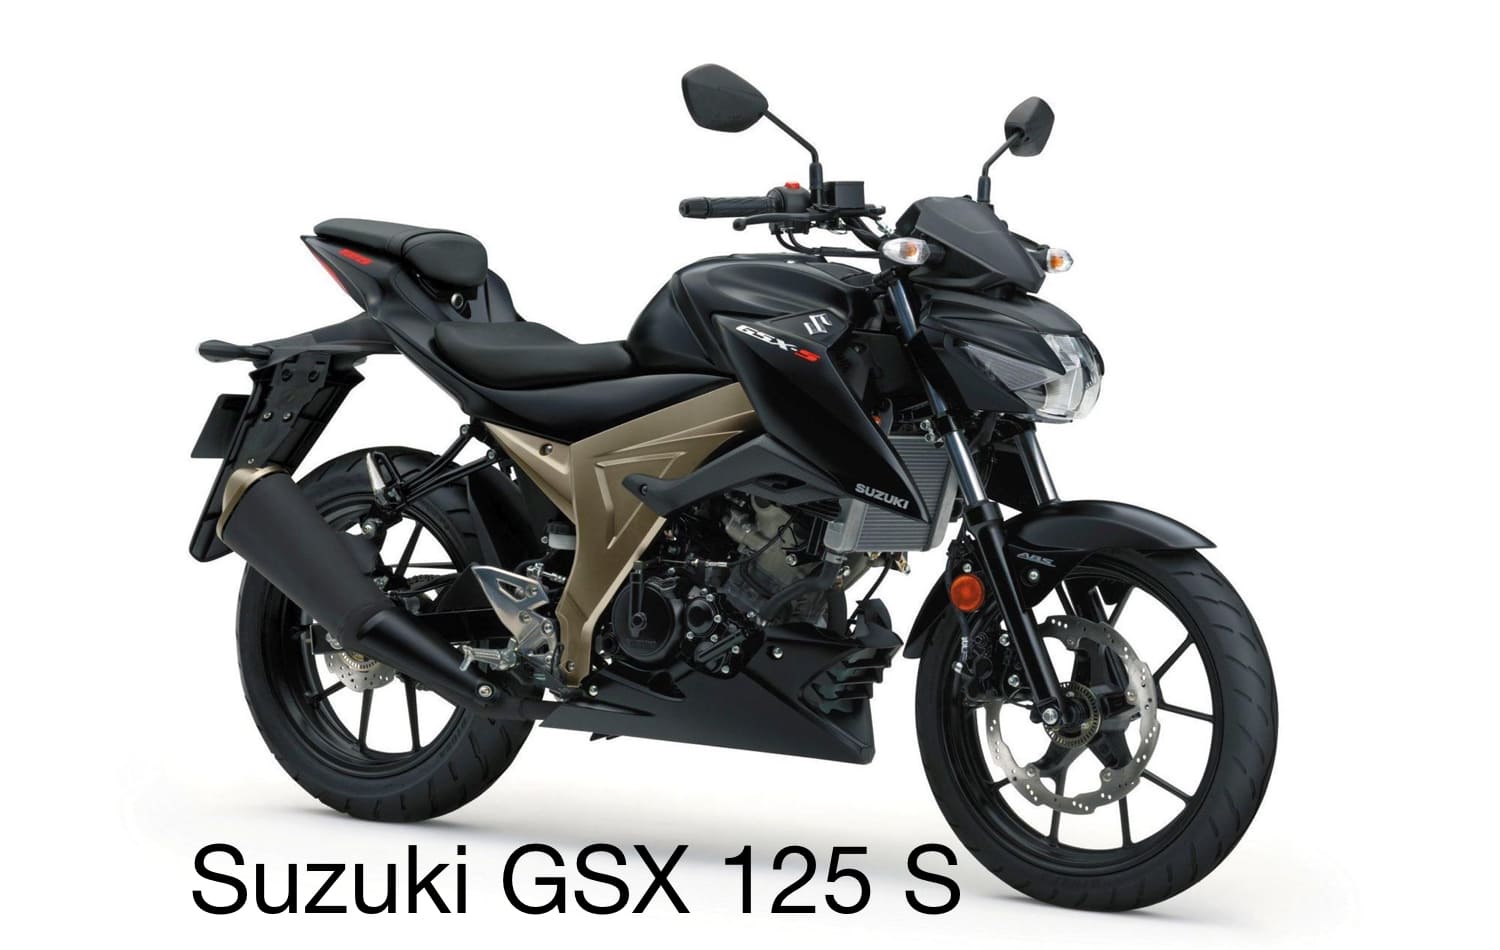 Suzuki GSX 125 